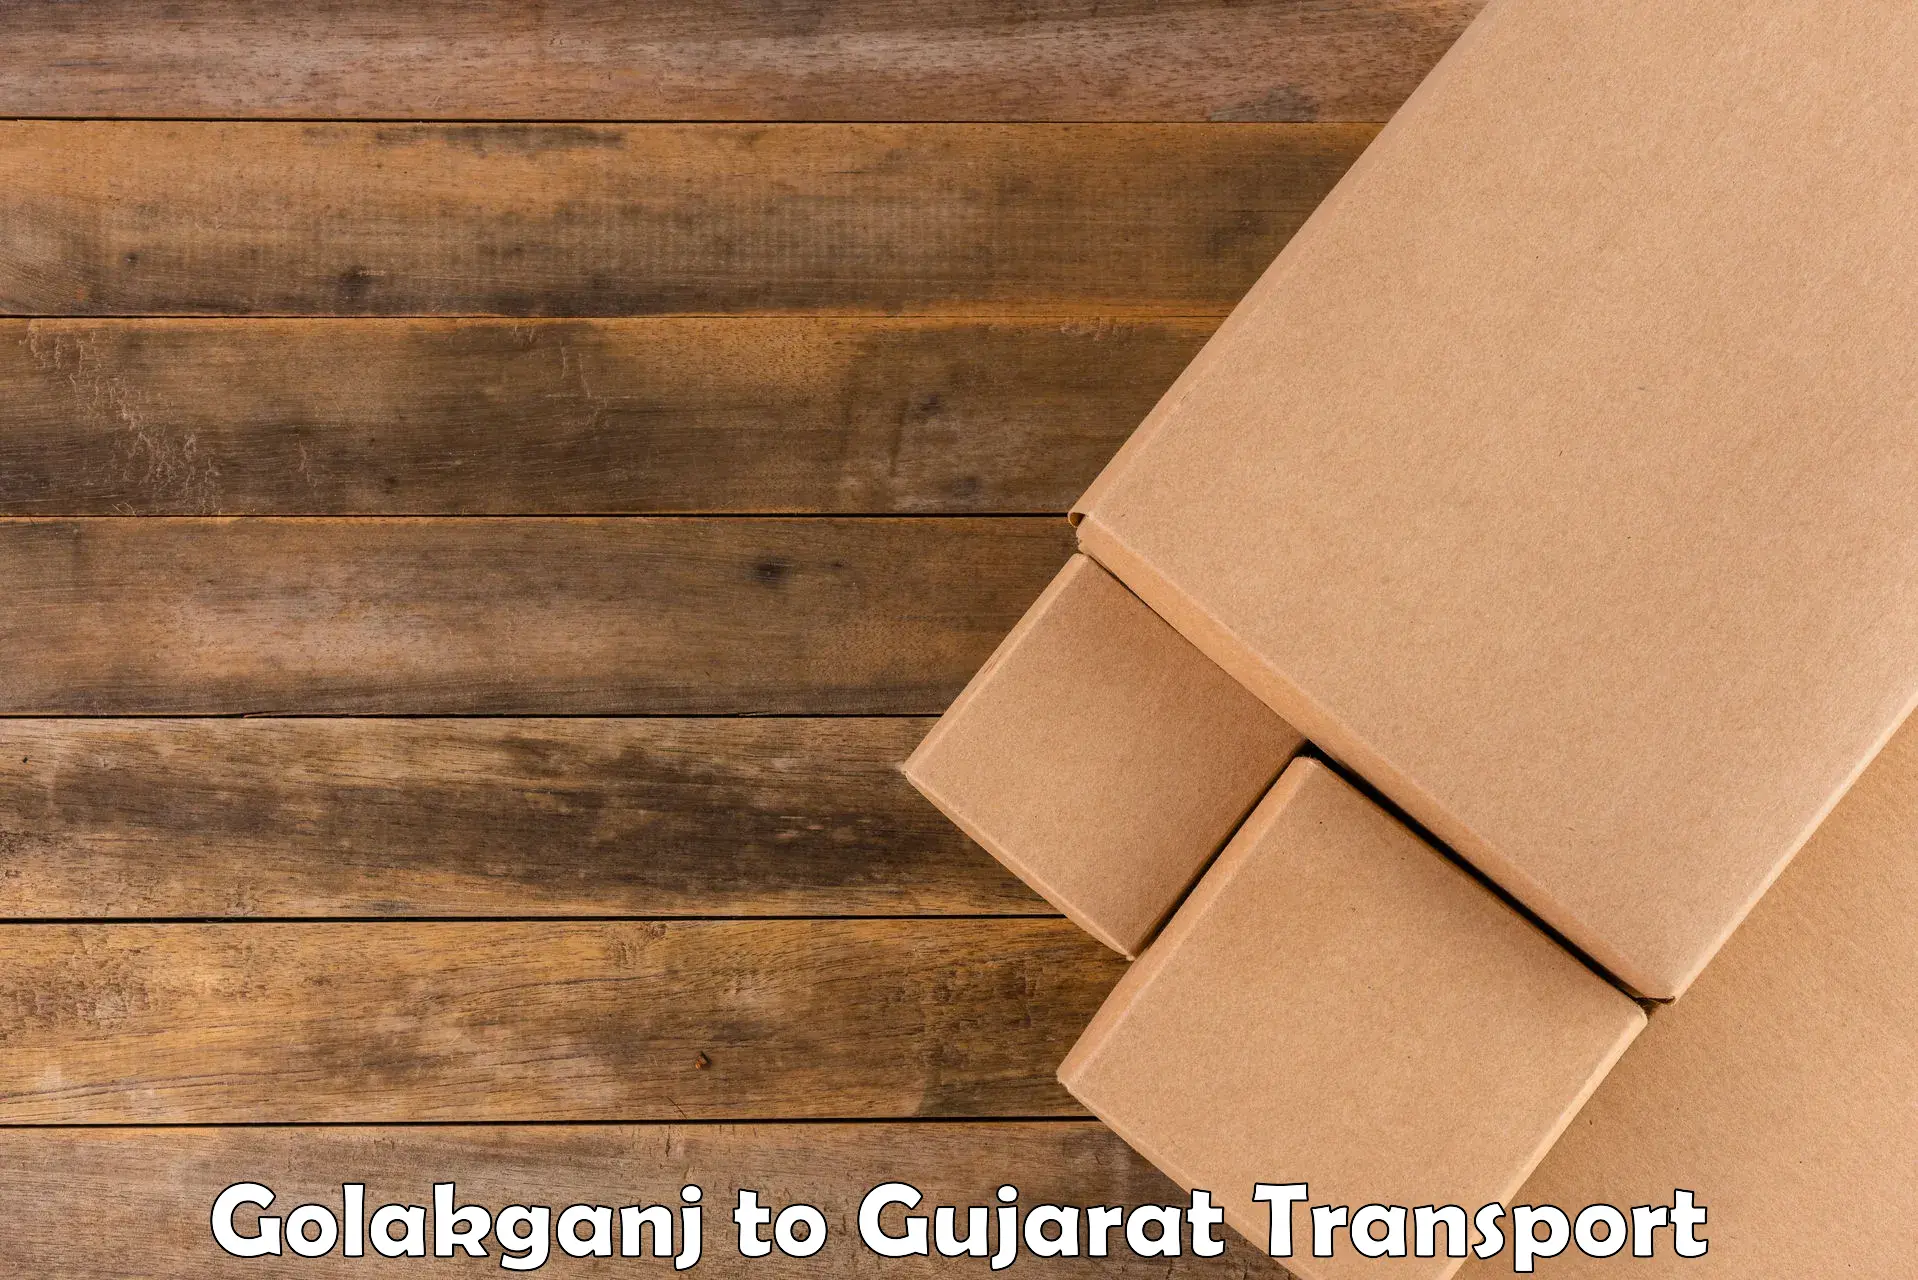 Pick up transport service Golakganj to Dediapada